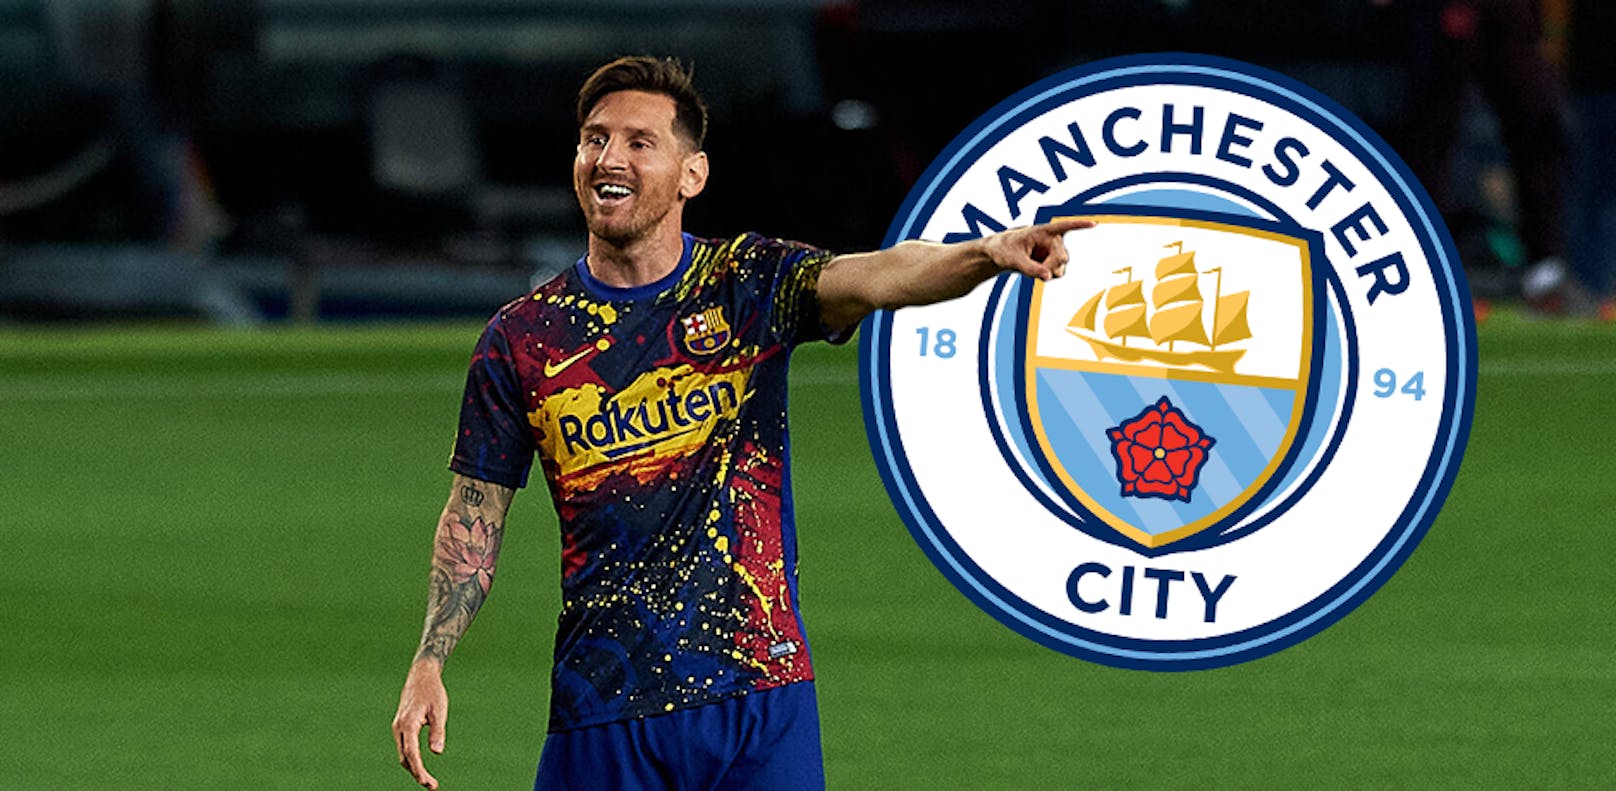 Wenn die Trennung vollzogen ist, wird Messi wohl in der Premier League landen. Manchester City ist klarer Favorit für die Verpflichtung des Argentiniers. Dort trifft er auf Kumpel Sergio Aguero und den einstigen Mentor Pep Guardiola. Adios, Leo!